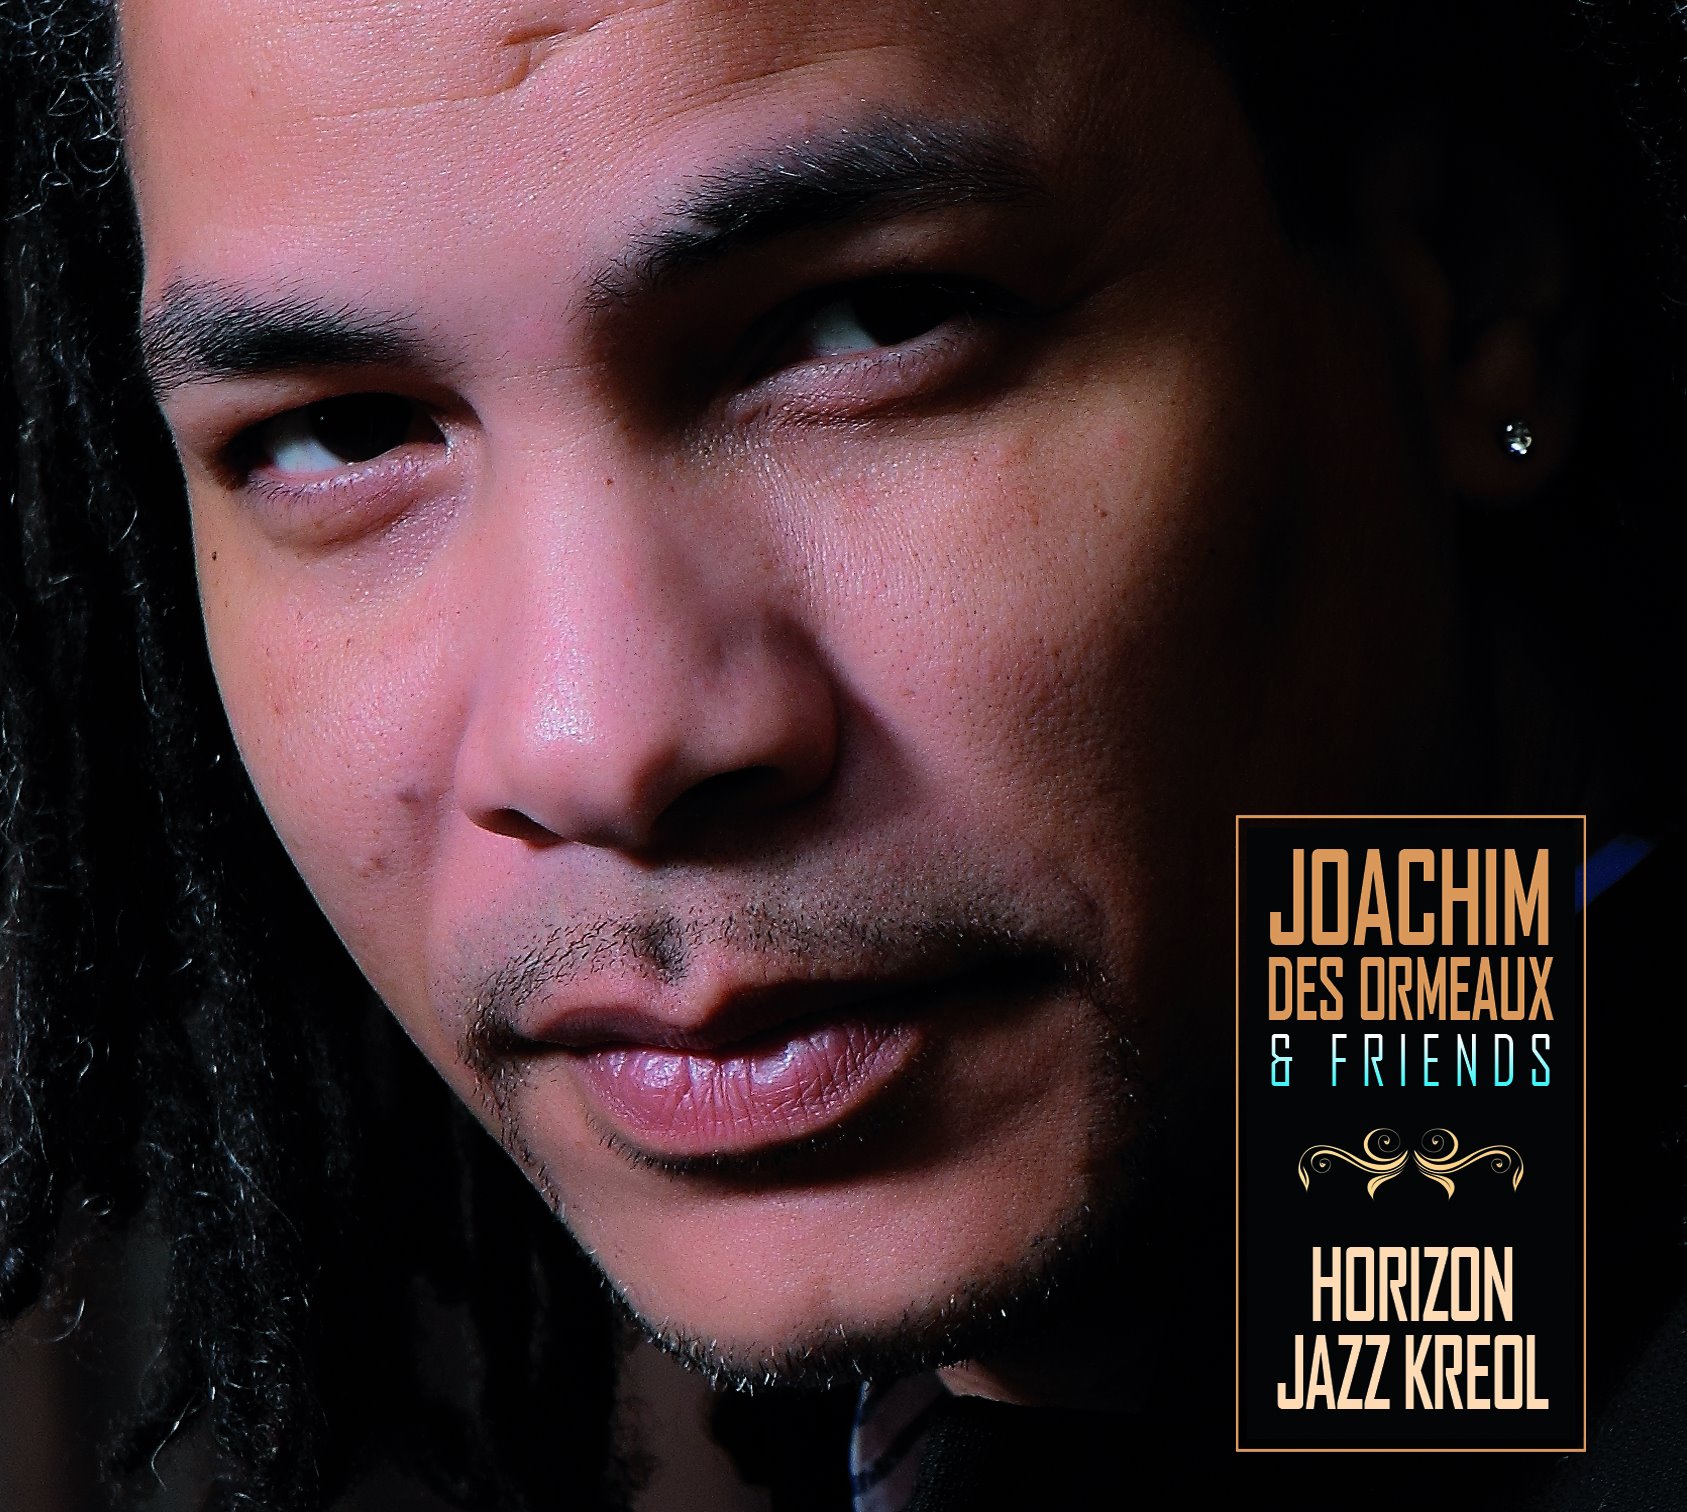 Joachim Des Ormeaux dit son “Horizon Jazz Kreol”